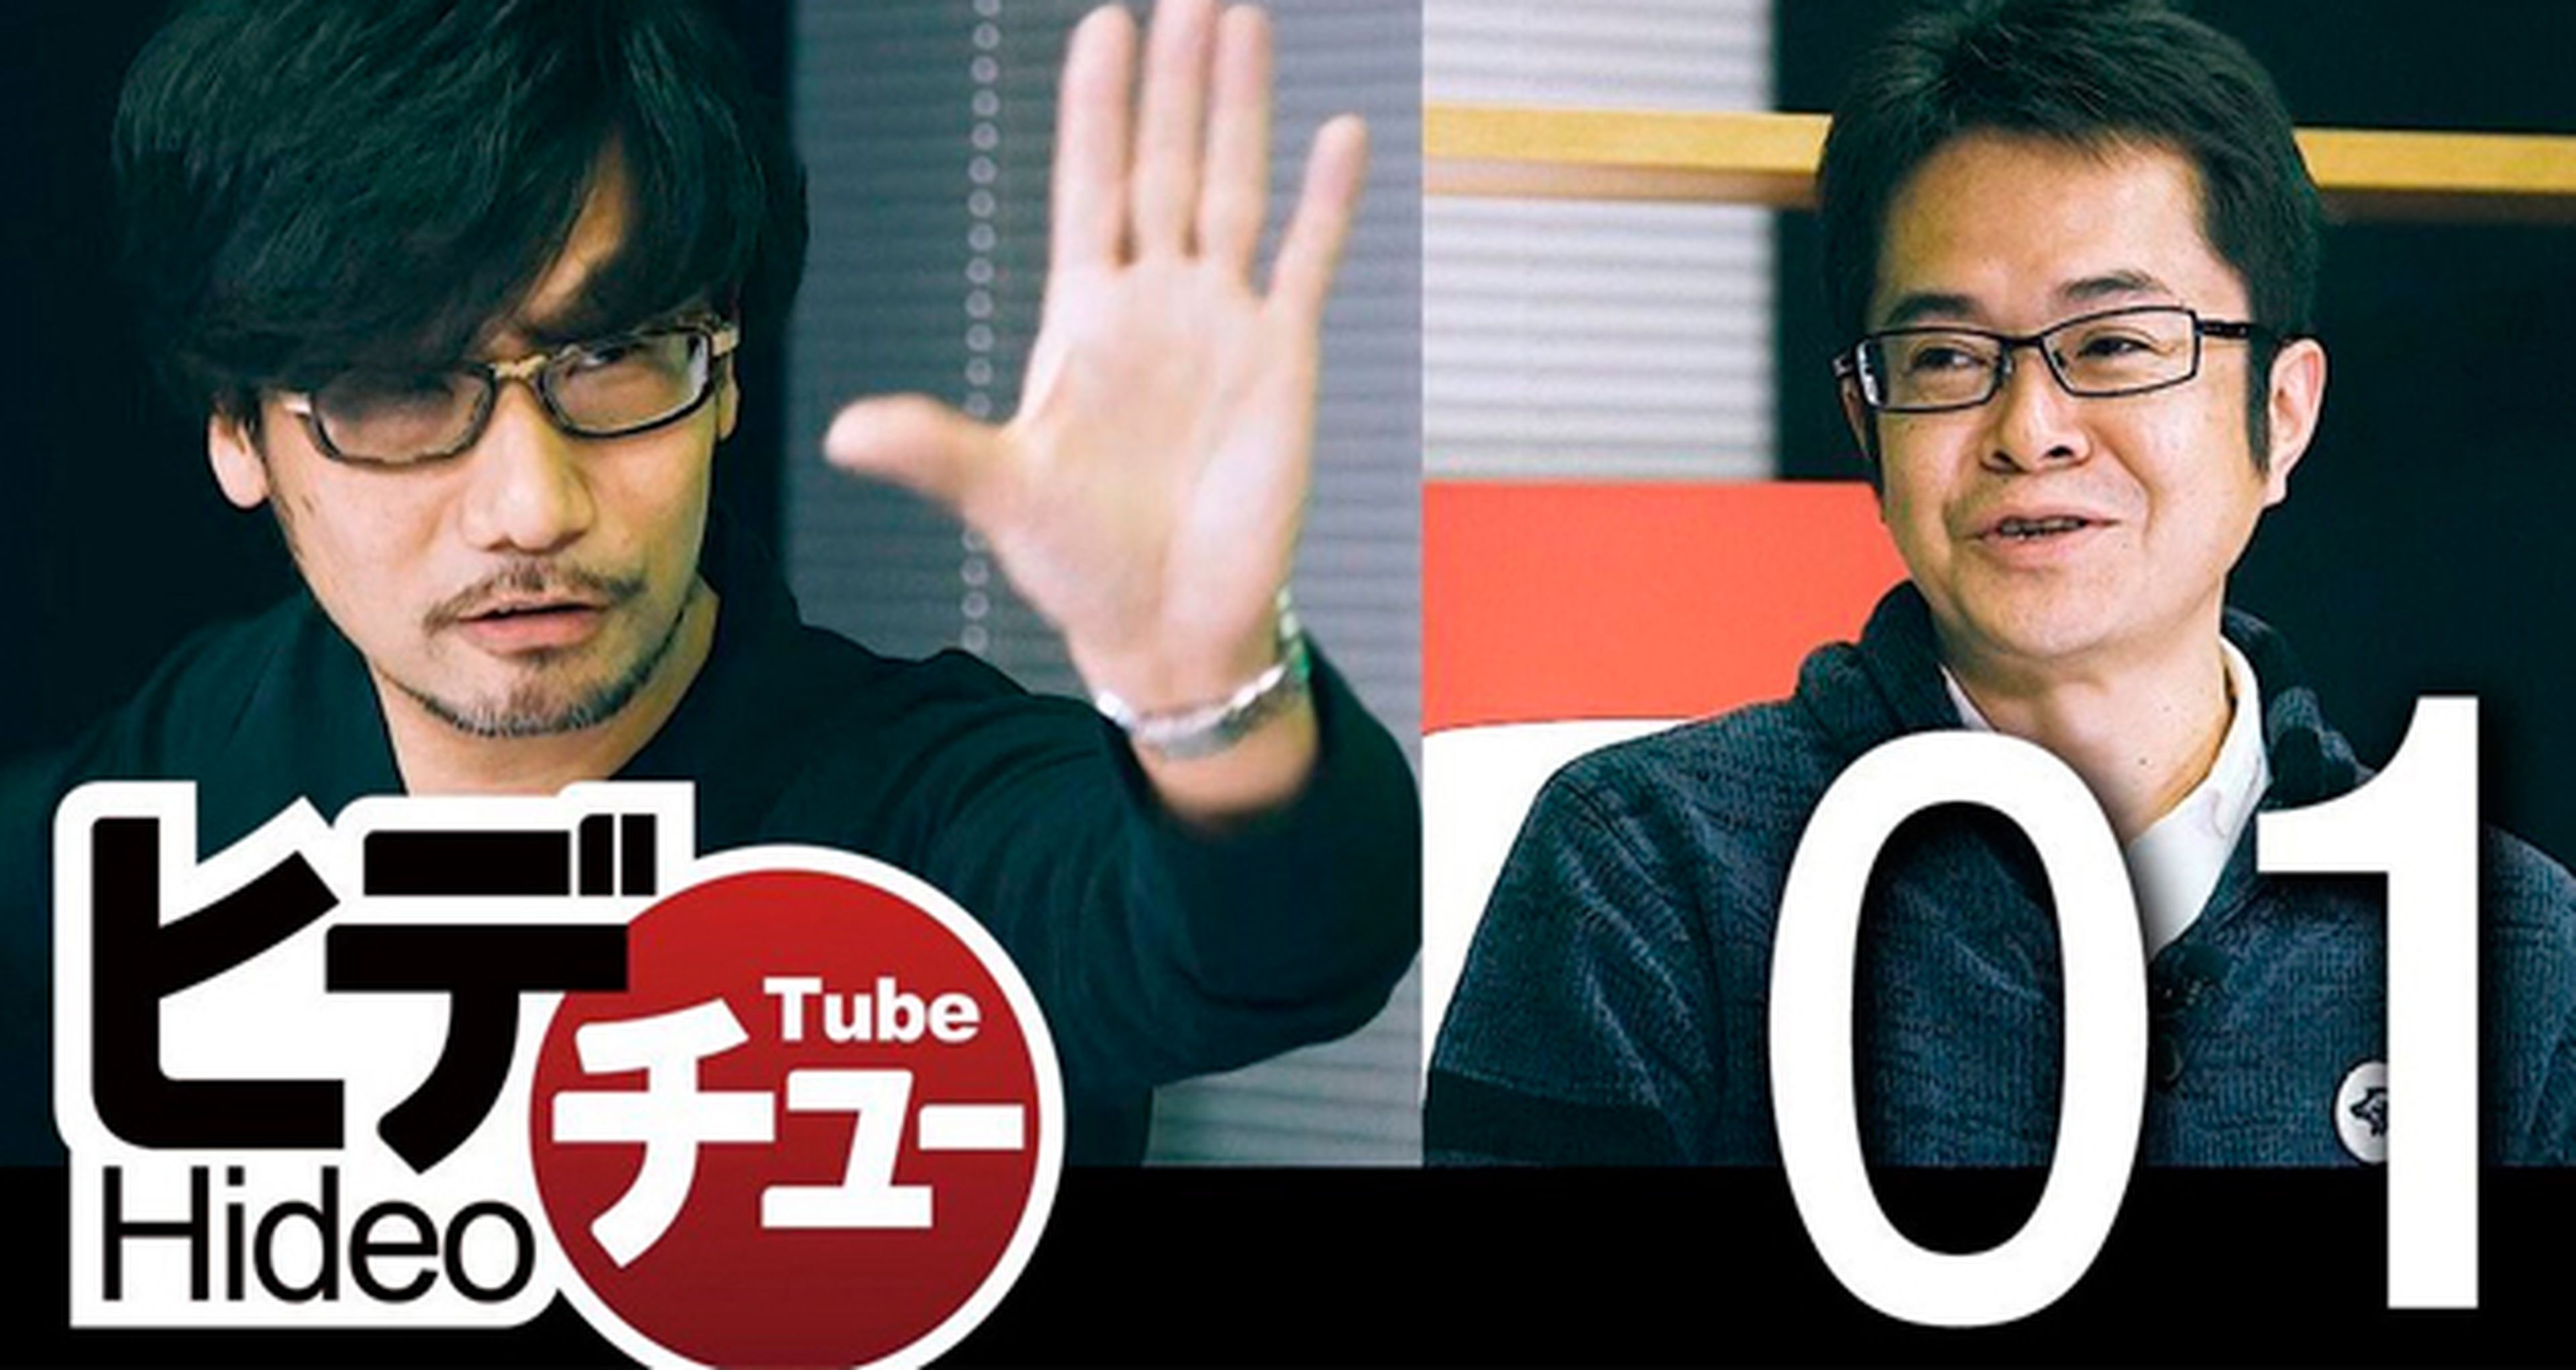 Hideo Kojima publicará mañana su primer Hideo Tube